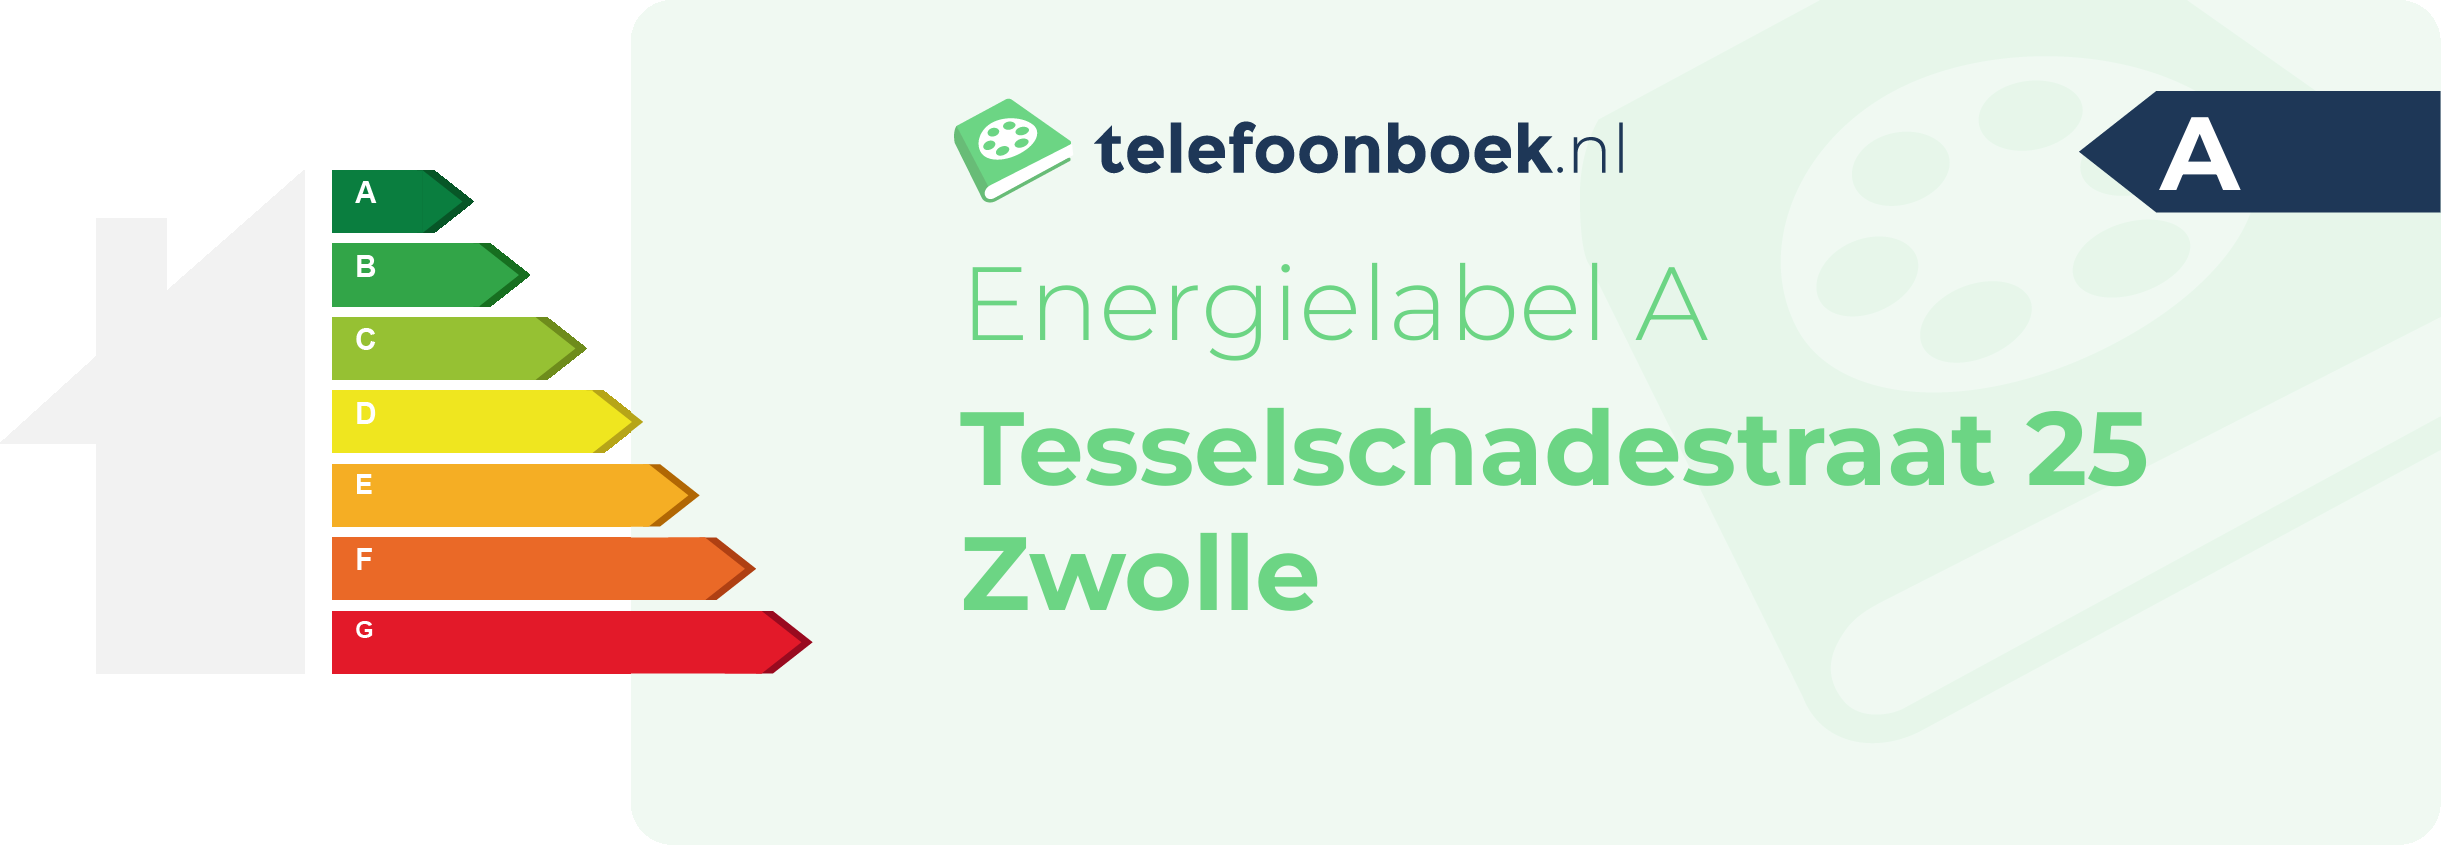 Energielabel Tesselschadestraat 25 Zwolle